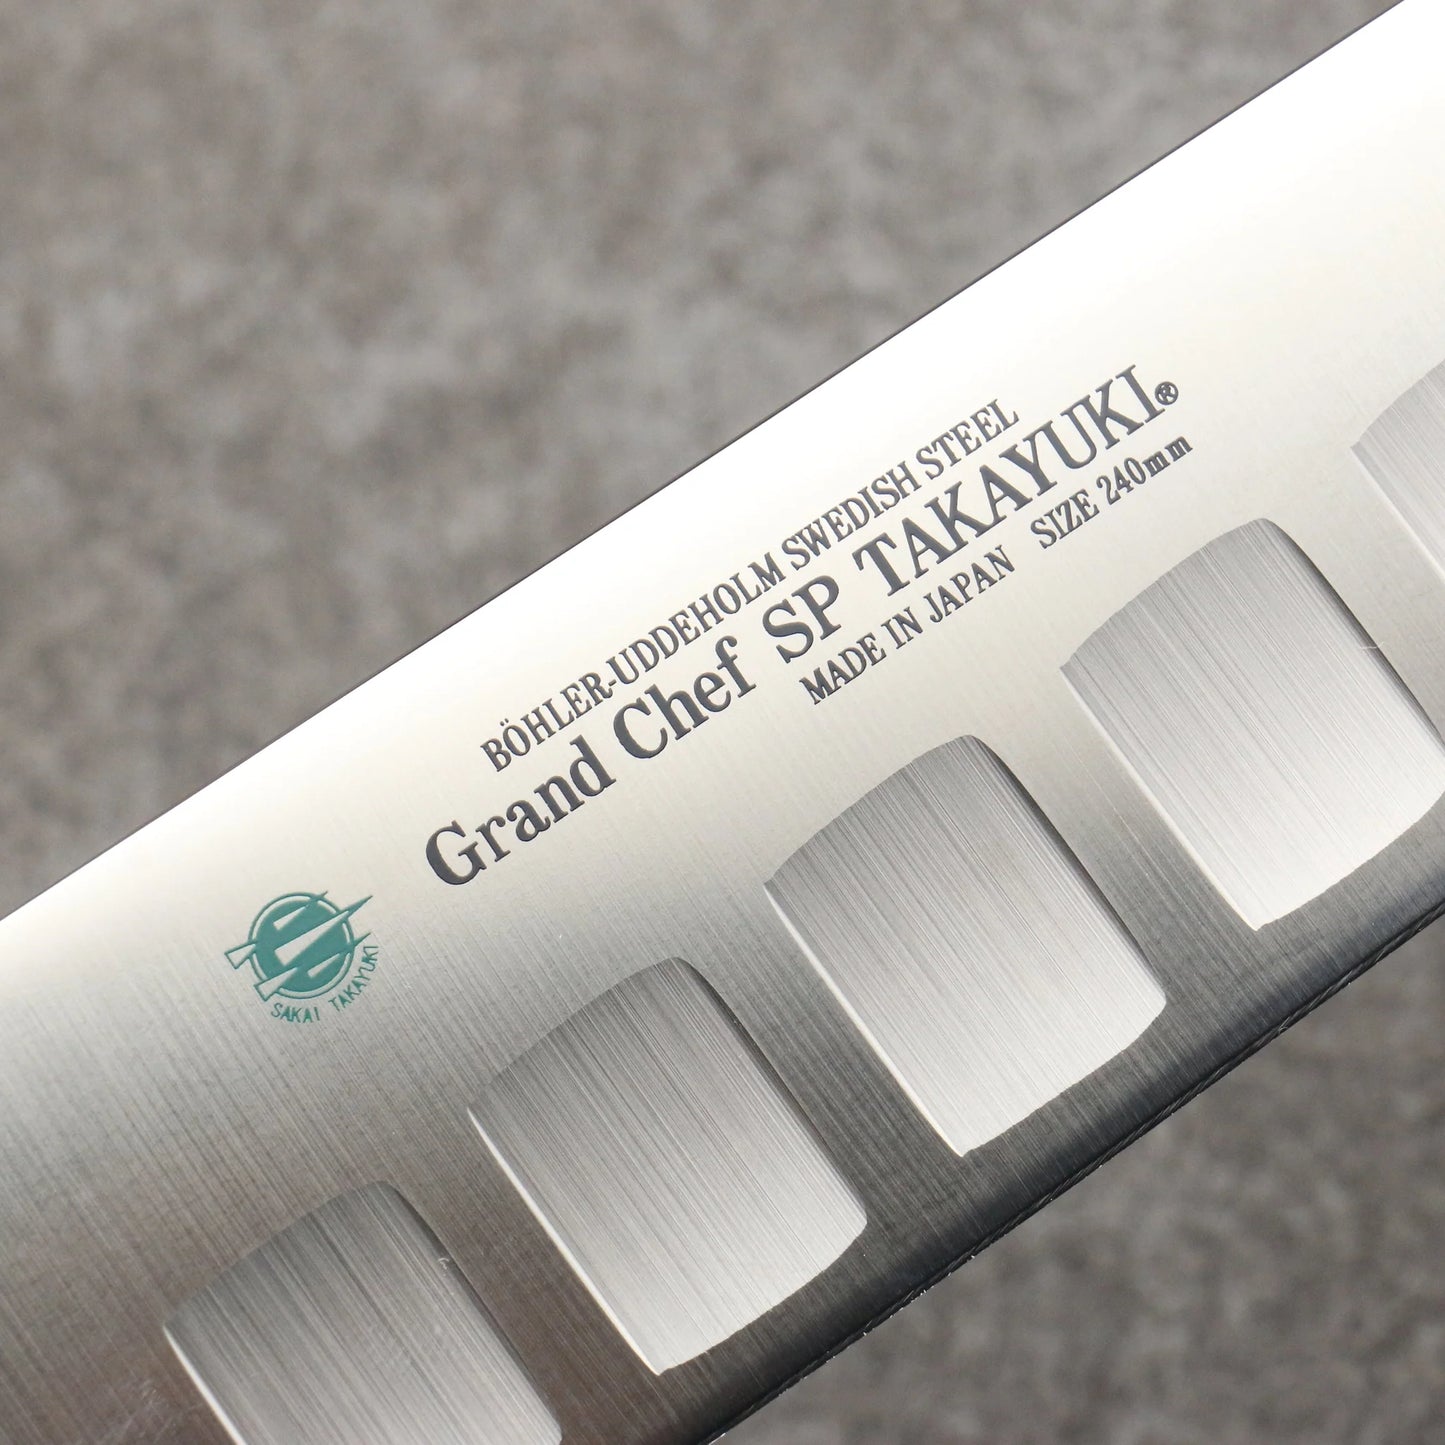 Marke Sakai Takayuki Grand Chef Spezialstahl Uddeholm Schweden Gyuto-Messer, spezialisiert auf Lachs Japanisches Messer 240-mm-Griff SP Typ III (Galaxy)